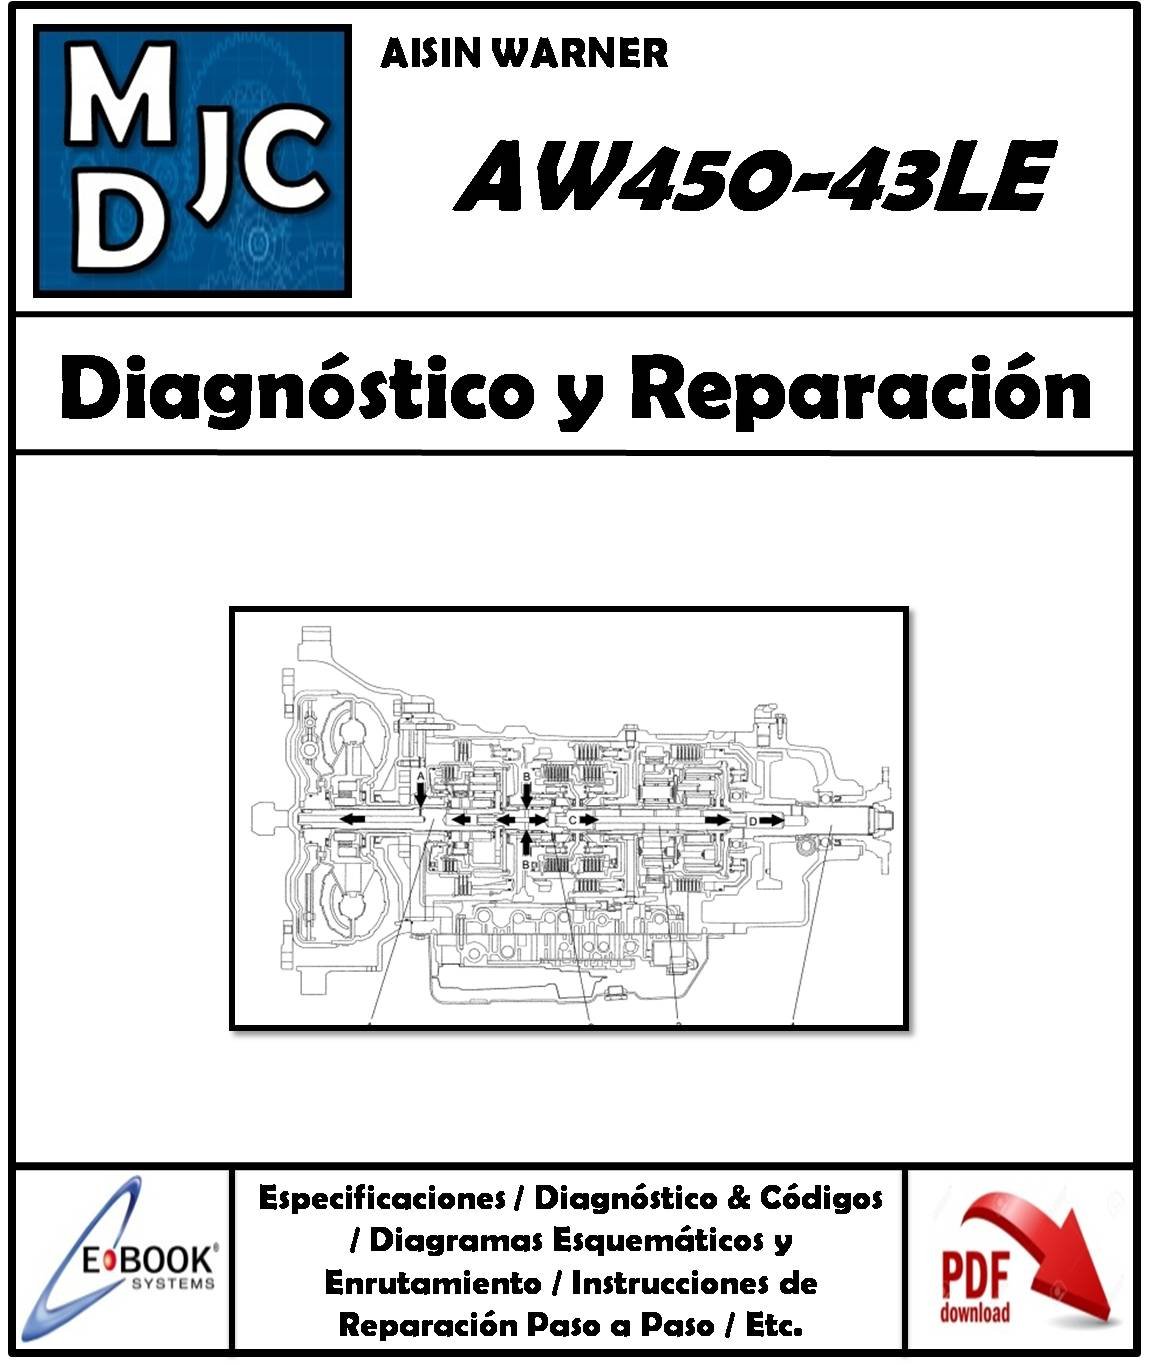 Manual de Taller Caja Automática Aisin Warner 450-43LE ( AW450-43LE )